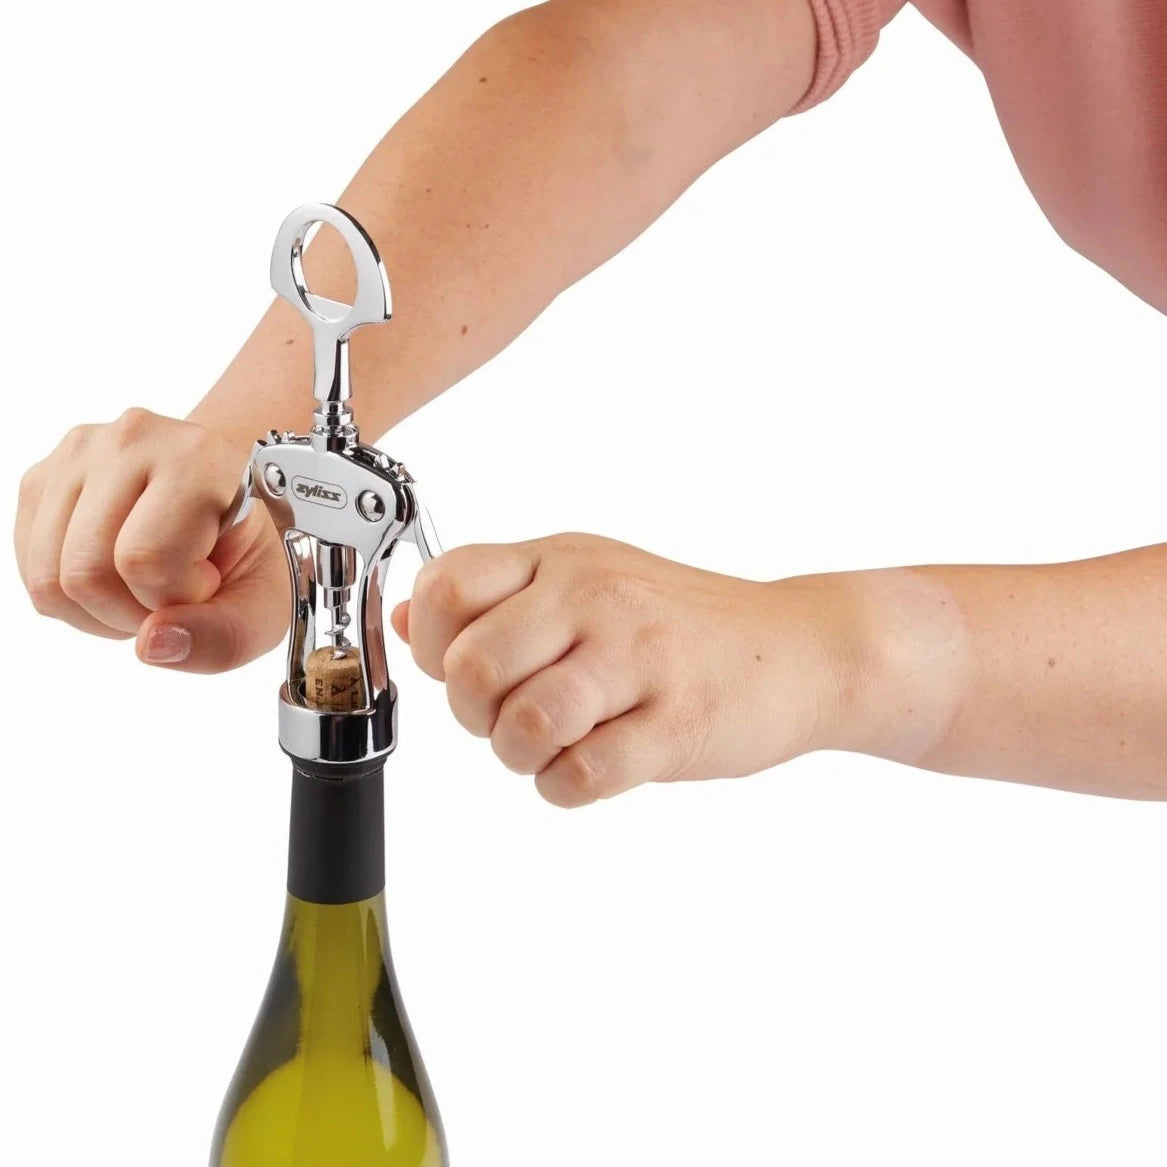 Zyliss Wine Bottle Opener taking cork out of bottle